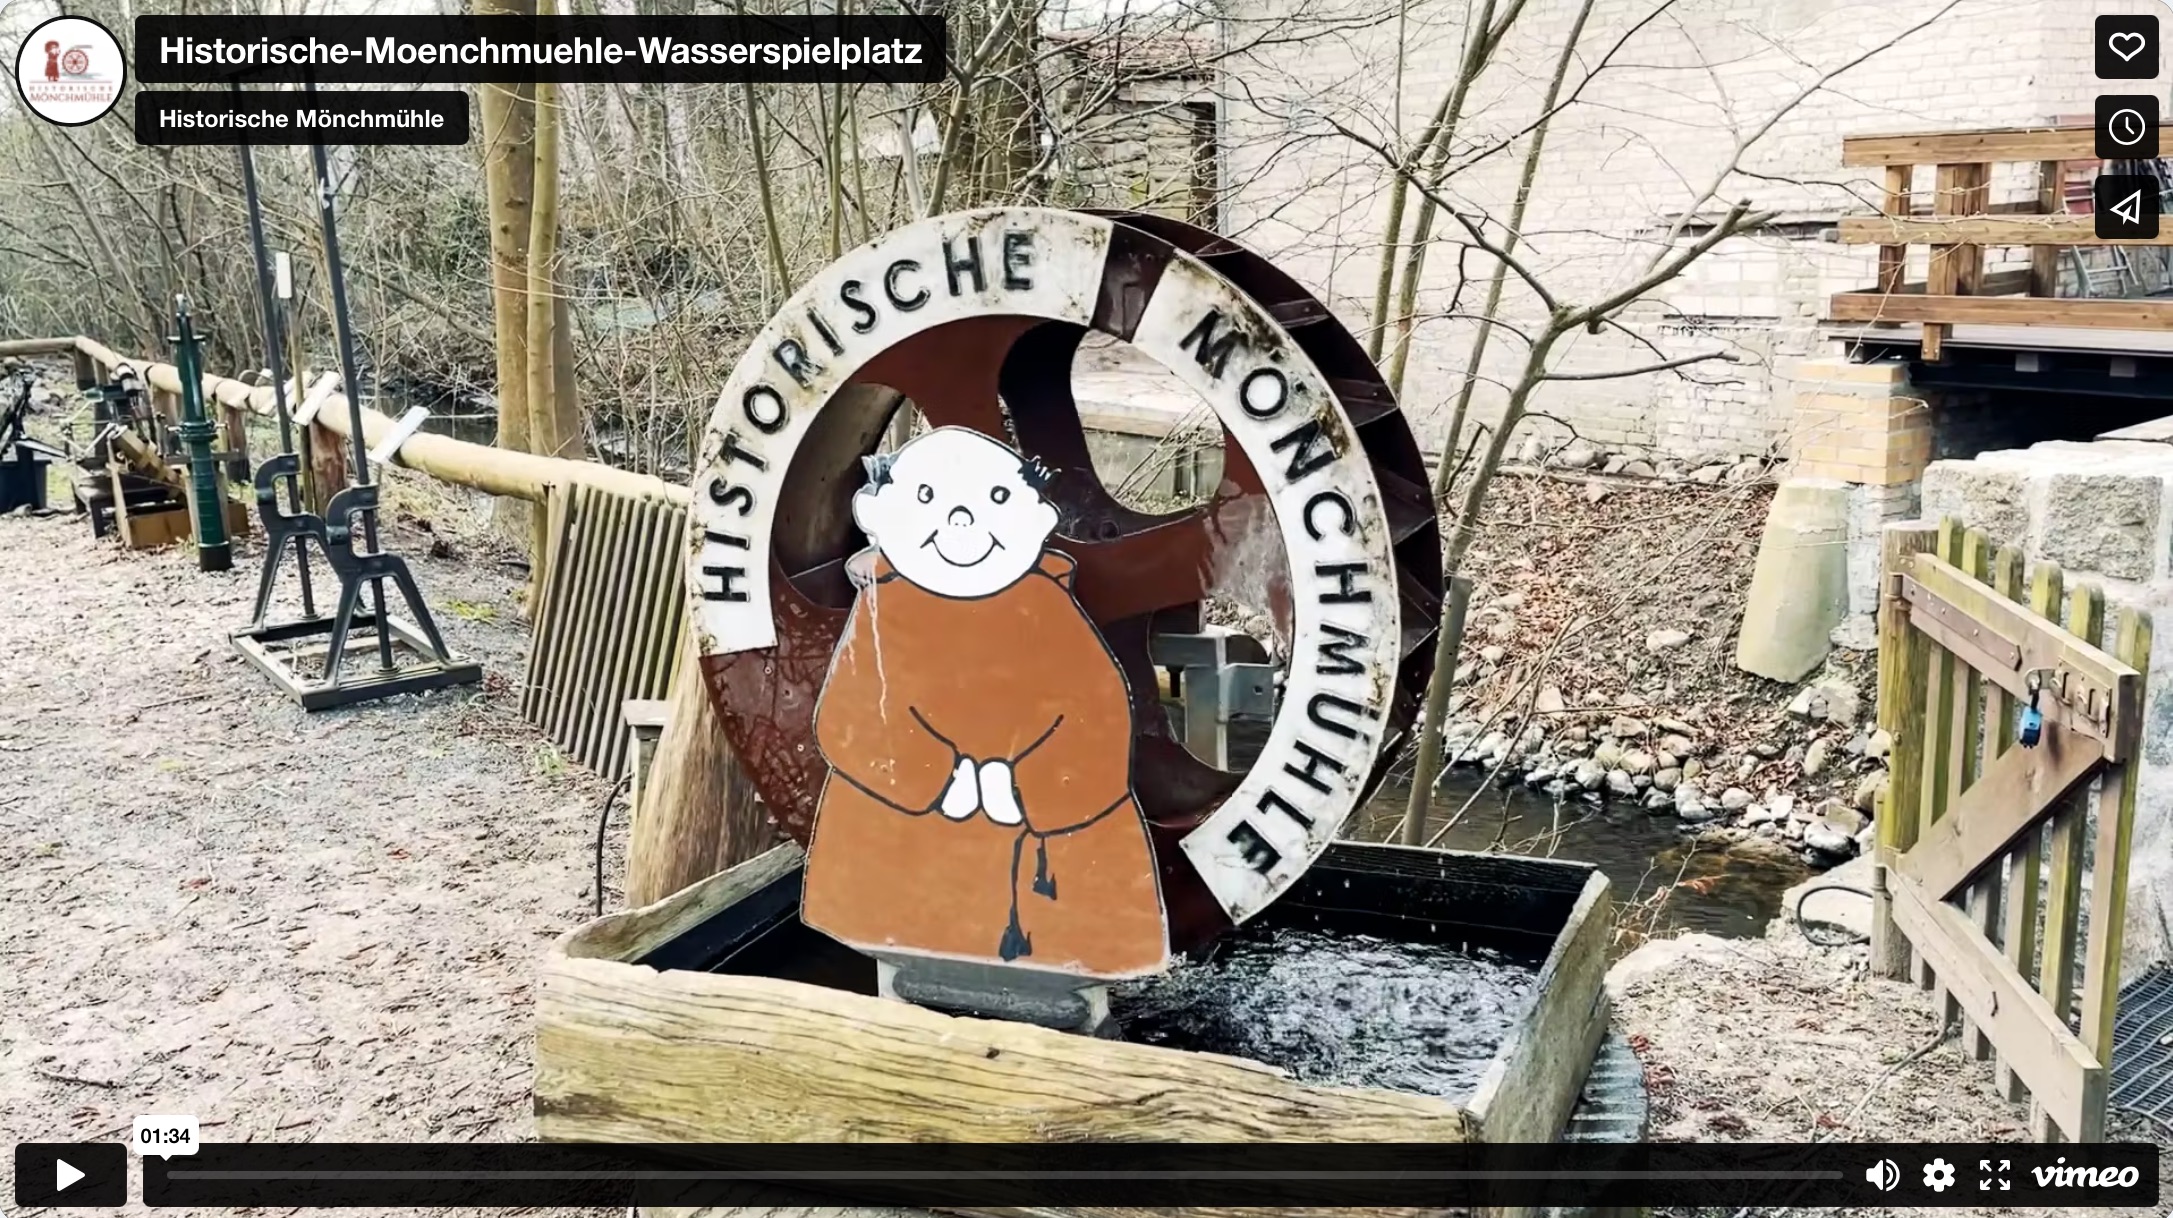 Bild vom Video über den Wasserspielplatz der Historischen Mönchmühle